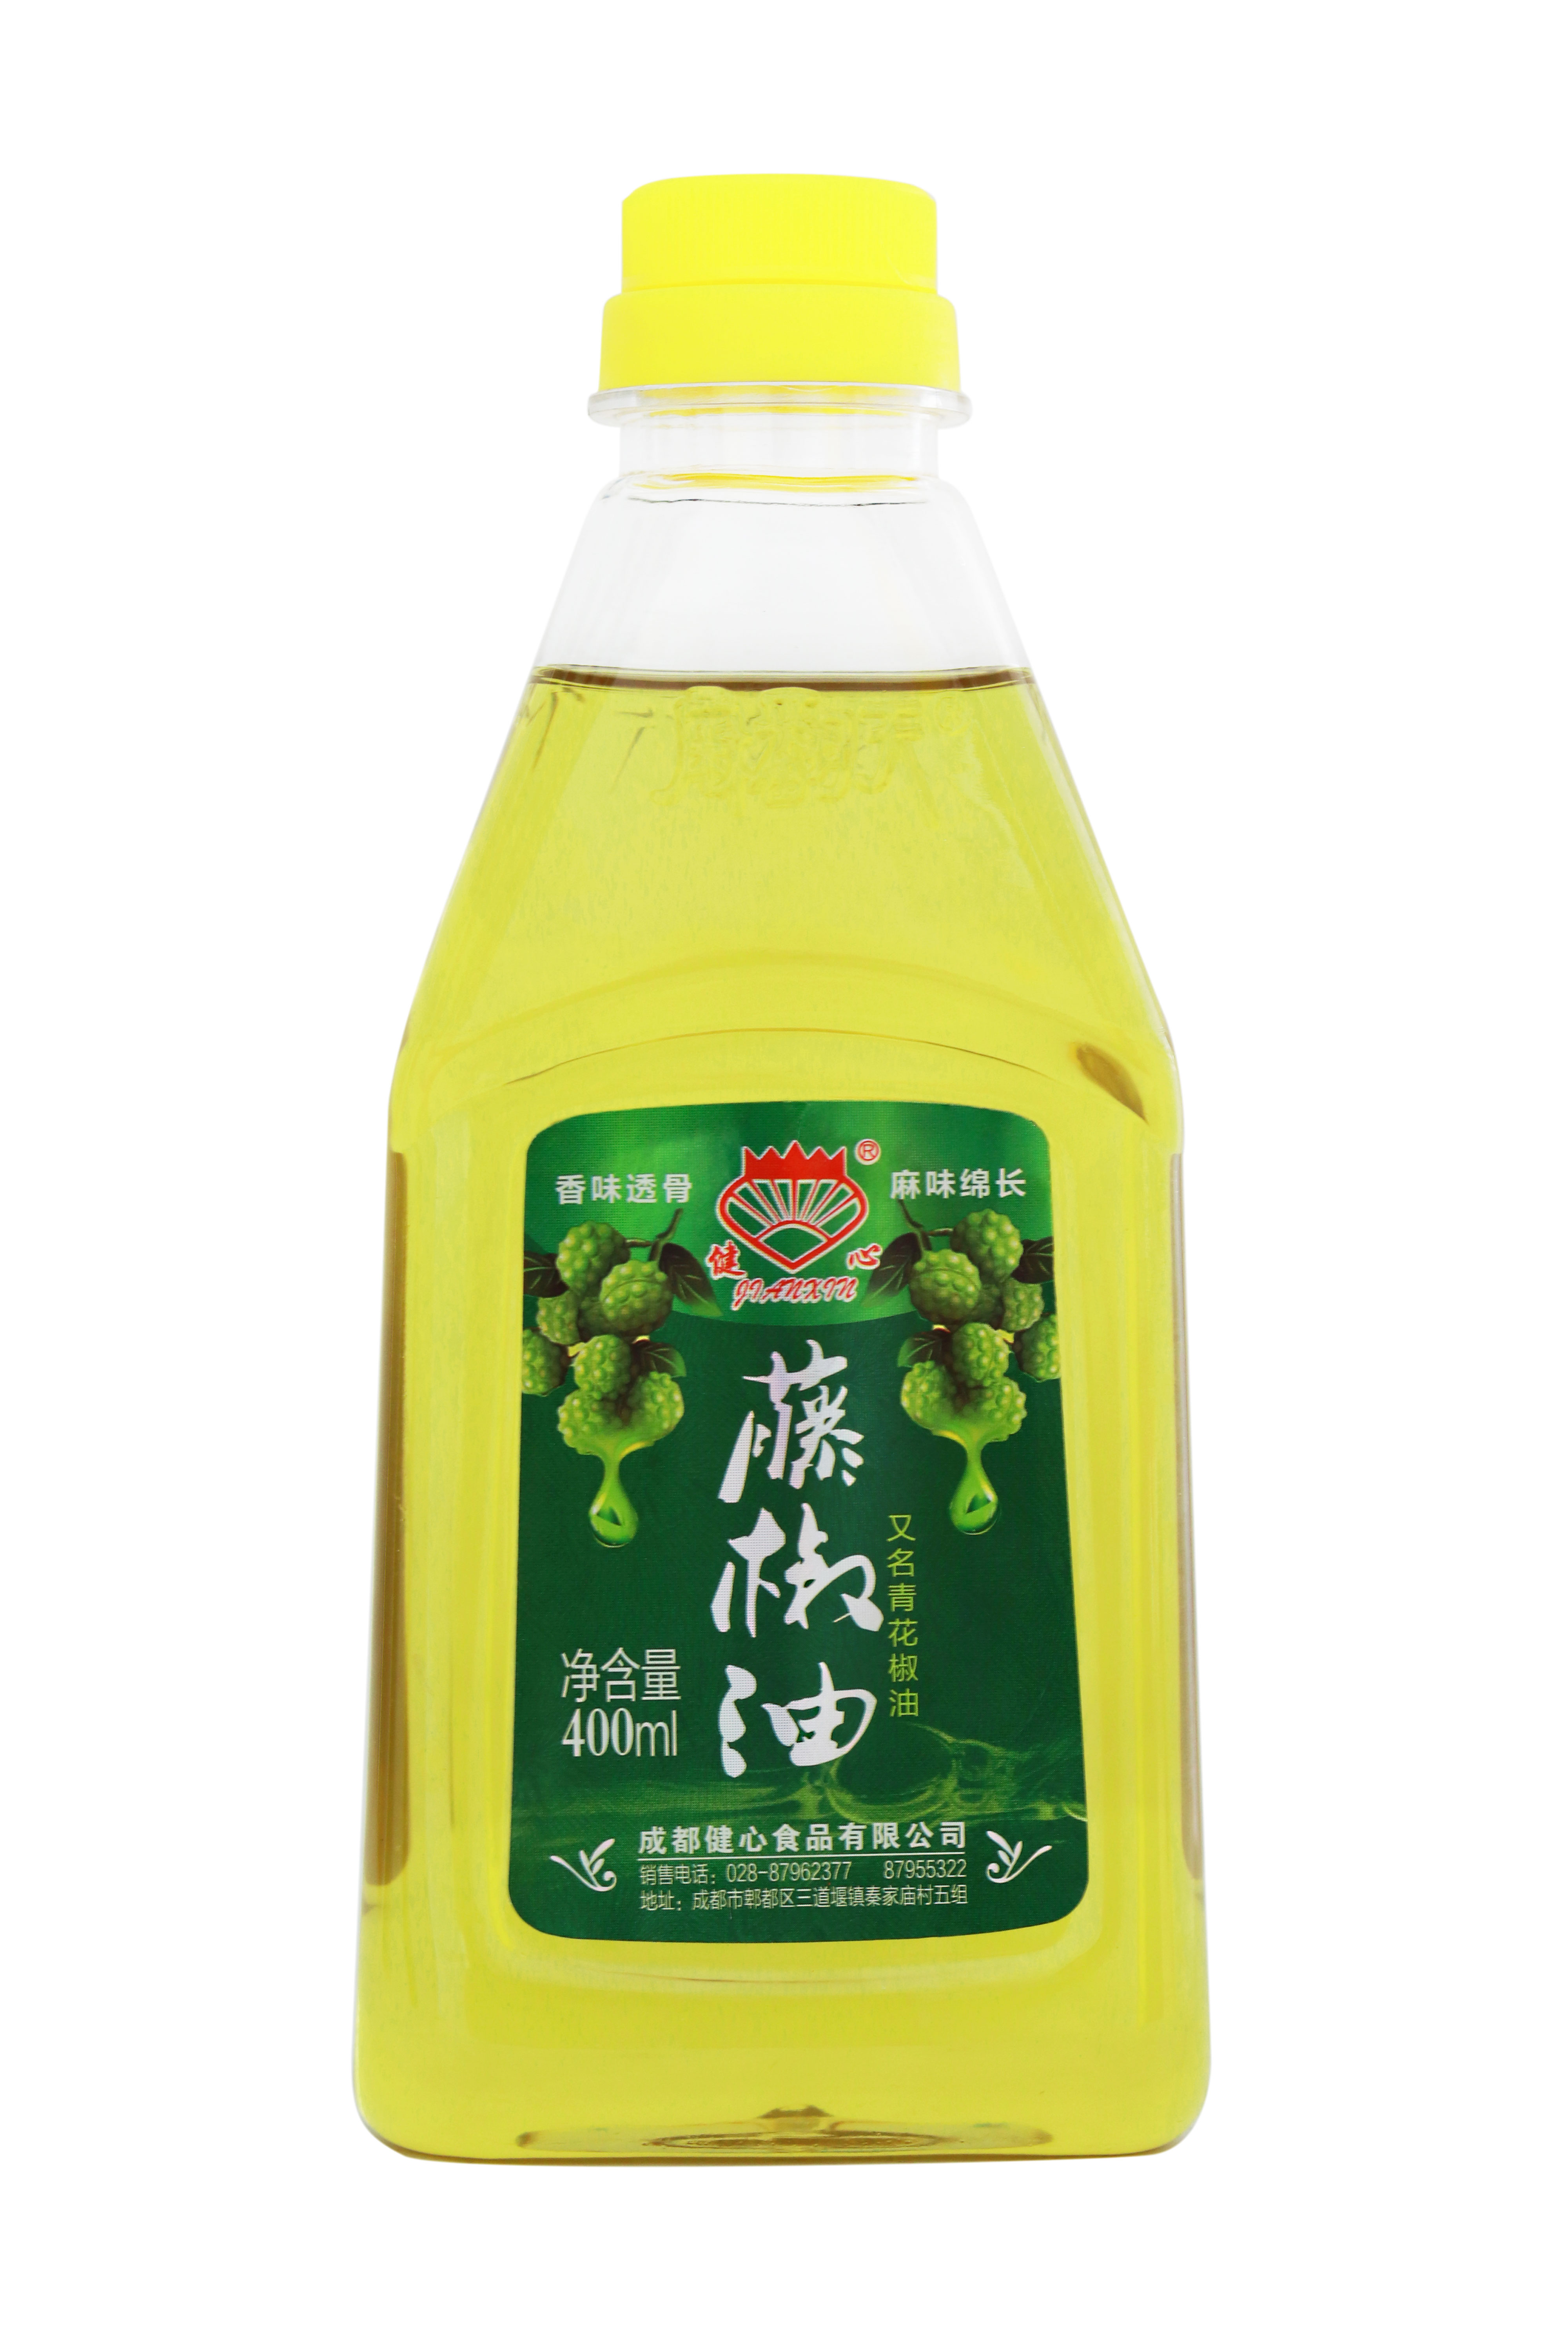 健心藤椒油400ml塑料瓶